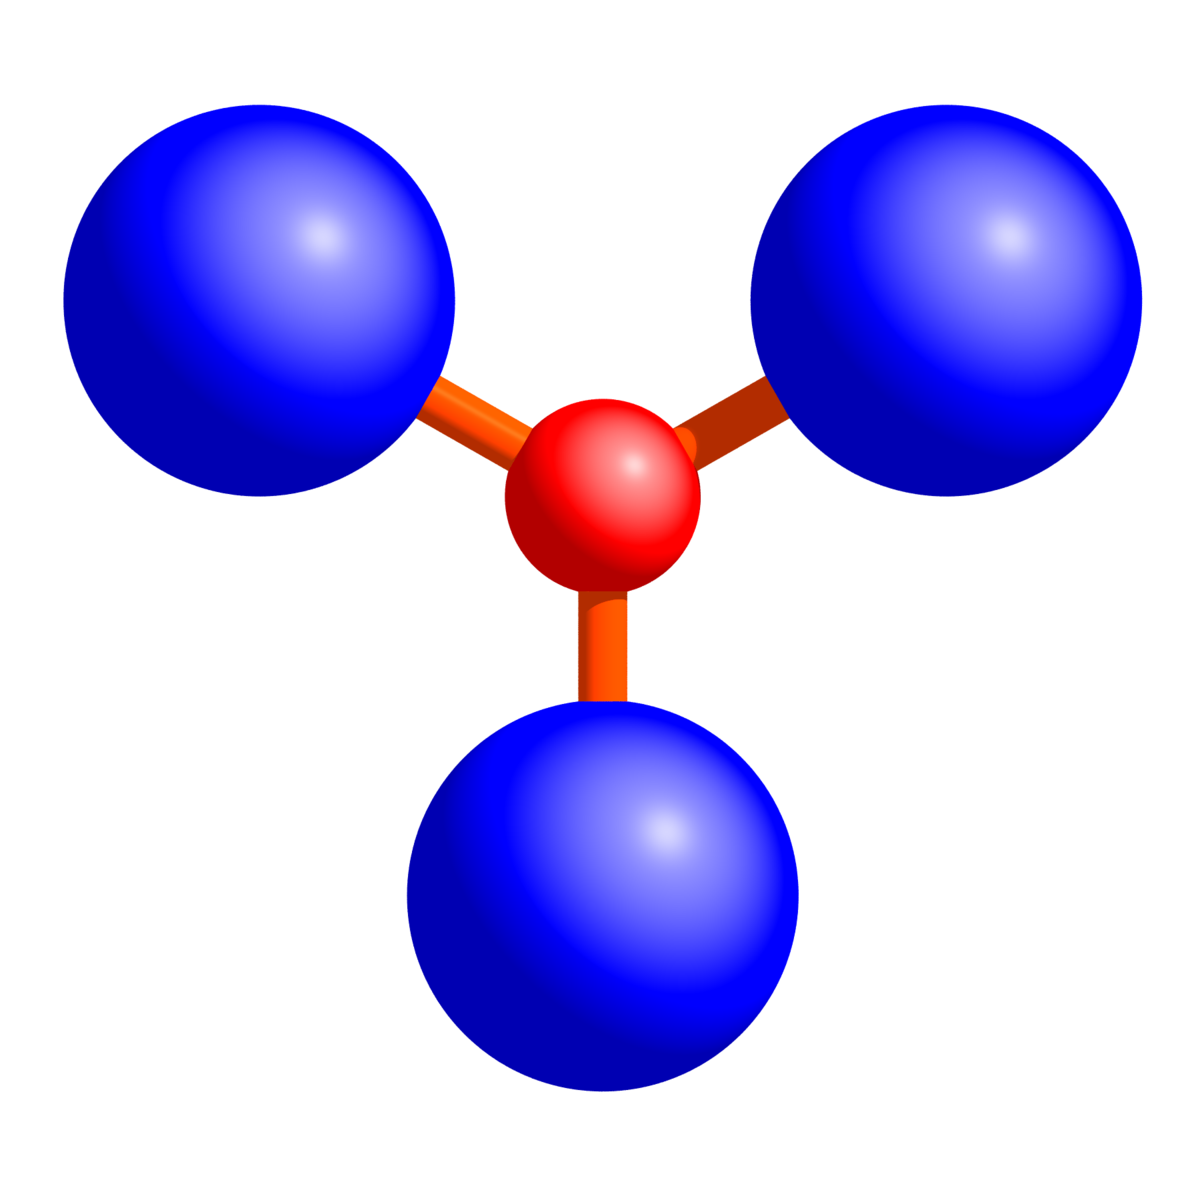 Молекула 104. Молекула озона o3. Моделирование молекул алканов. Сложная модель молекулы. Молекула алкана.